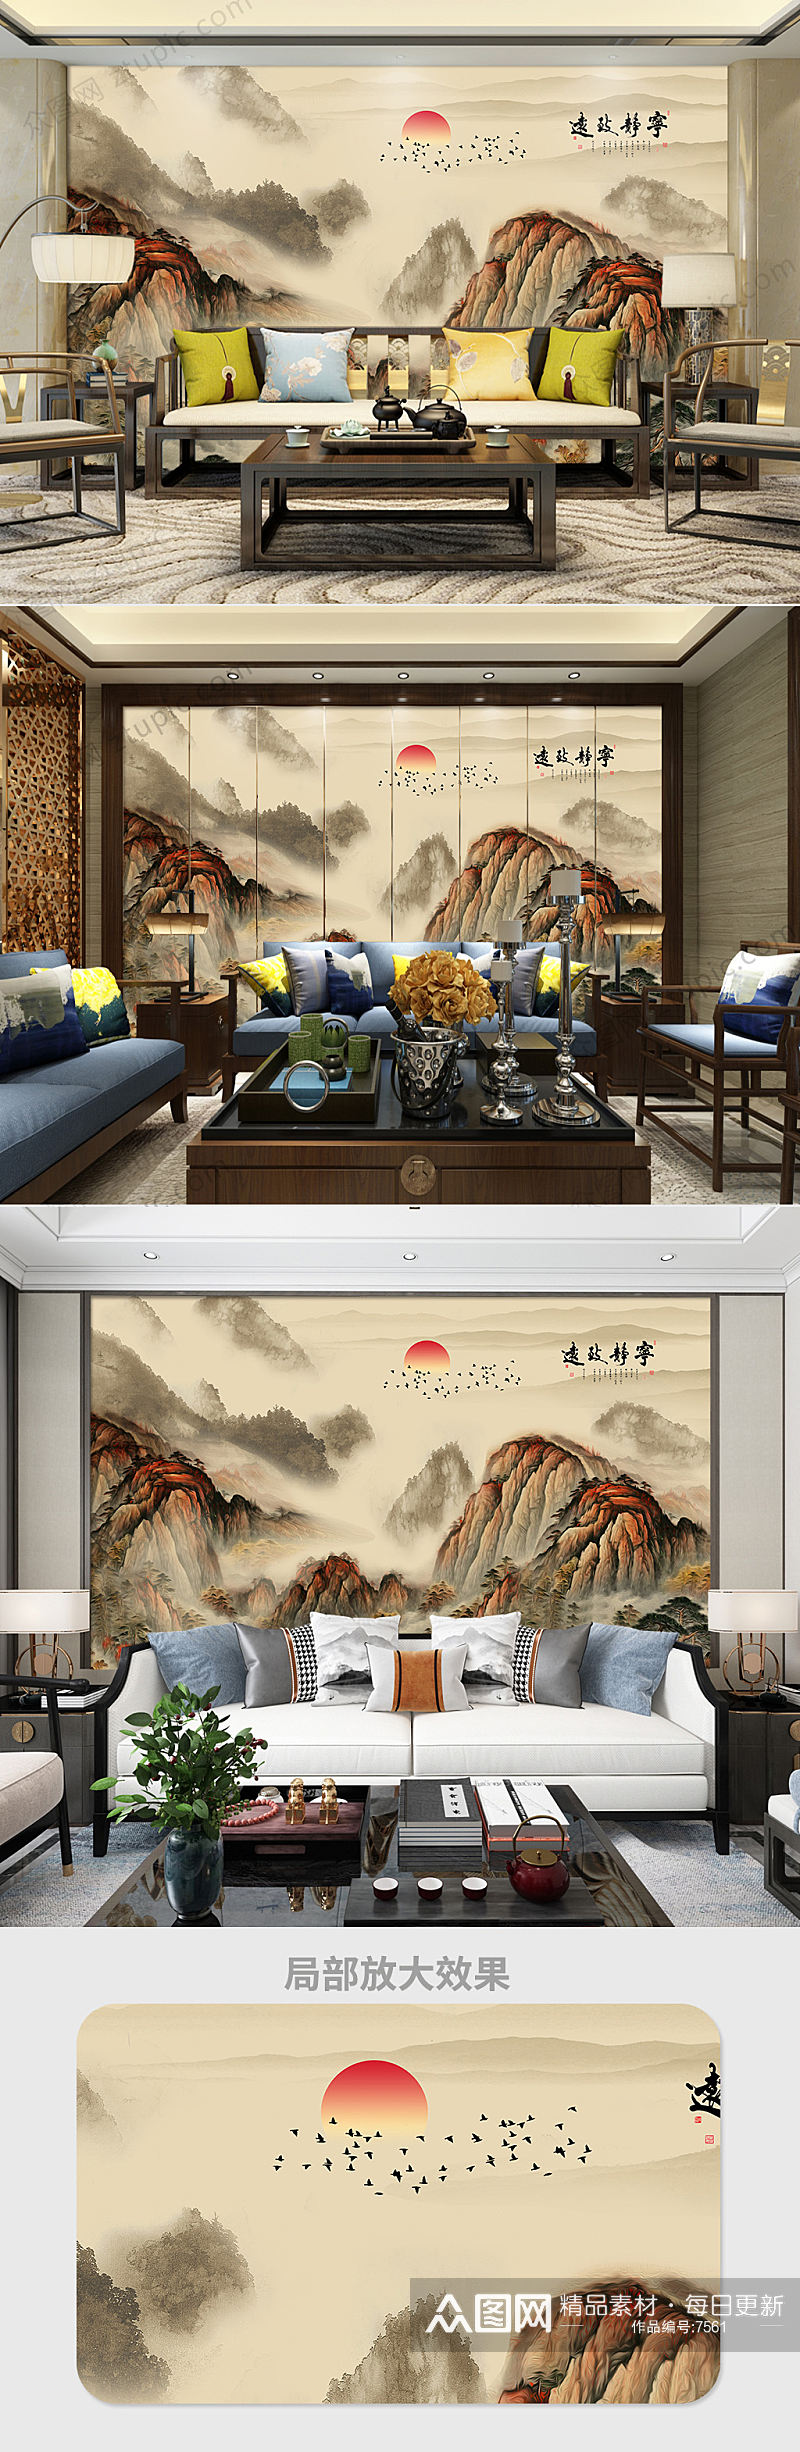 中式高山国画背景墙素材